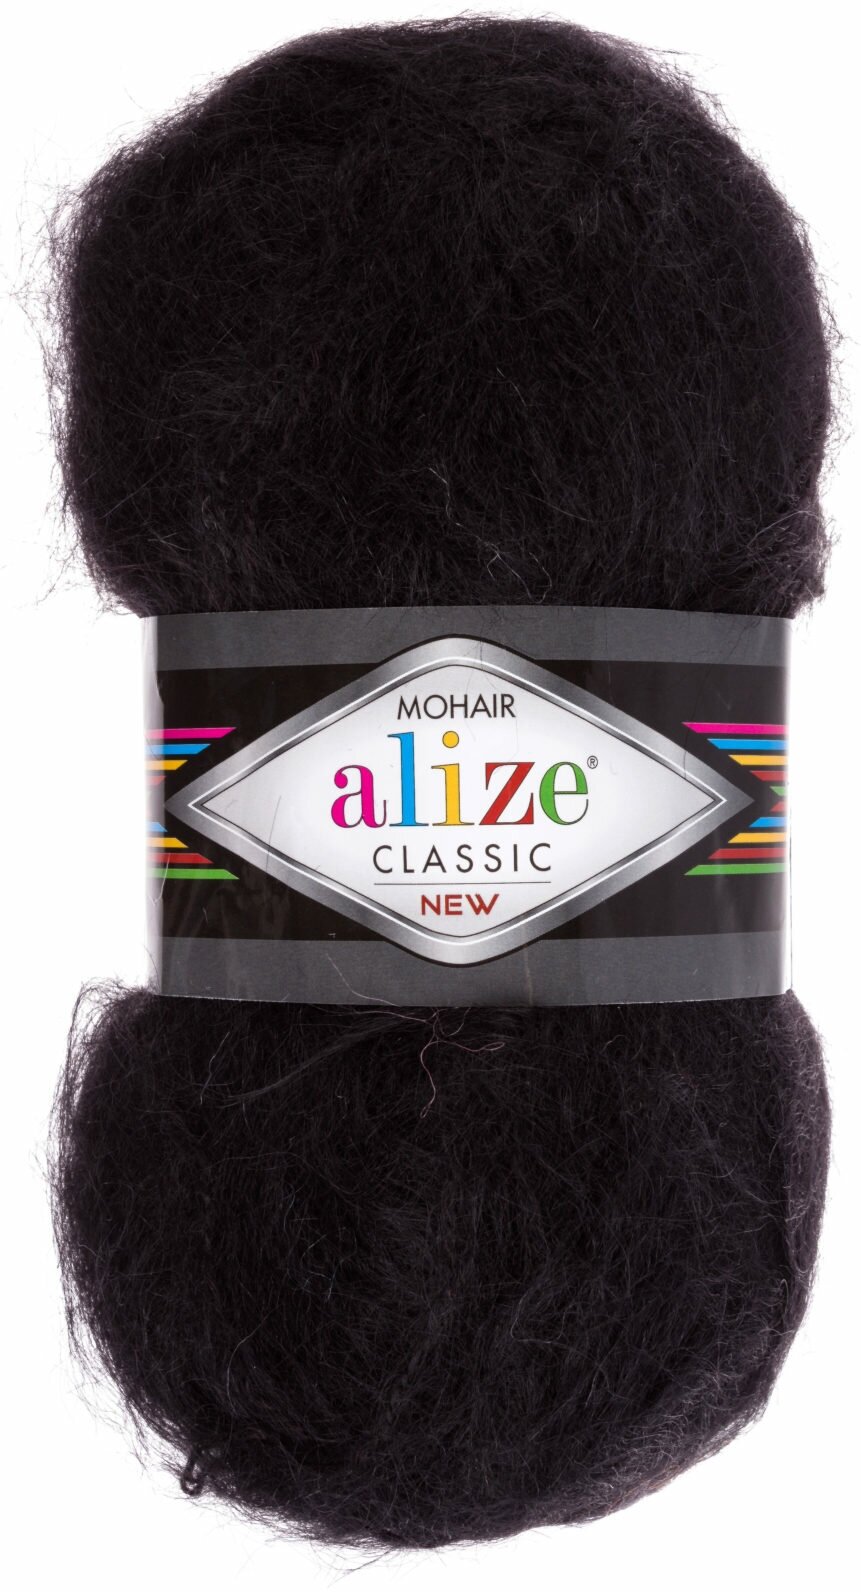 Пряжа Alize Mohair Classic черный (60), 24%шерсть/25%мохер/51%акрил, 200м, 100г, 1шт